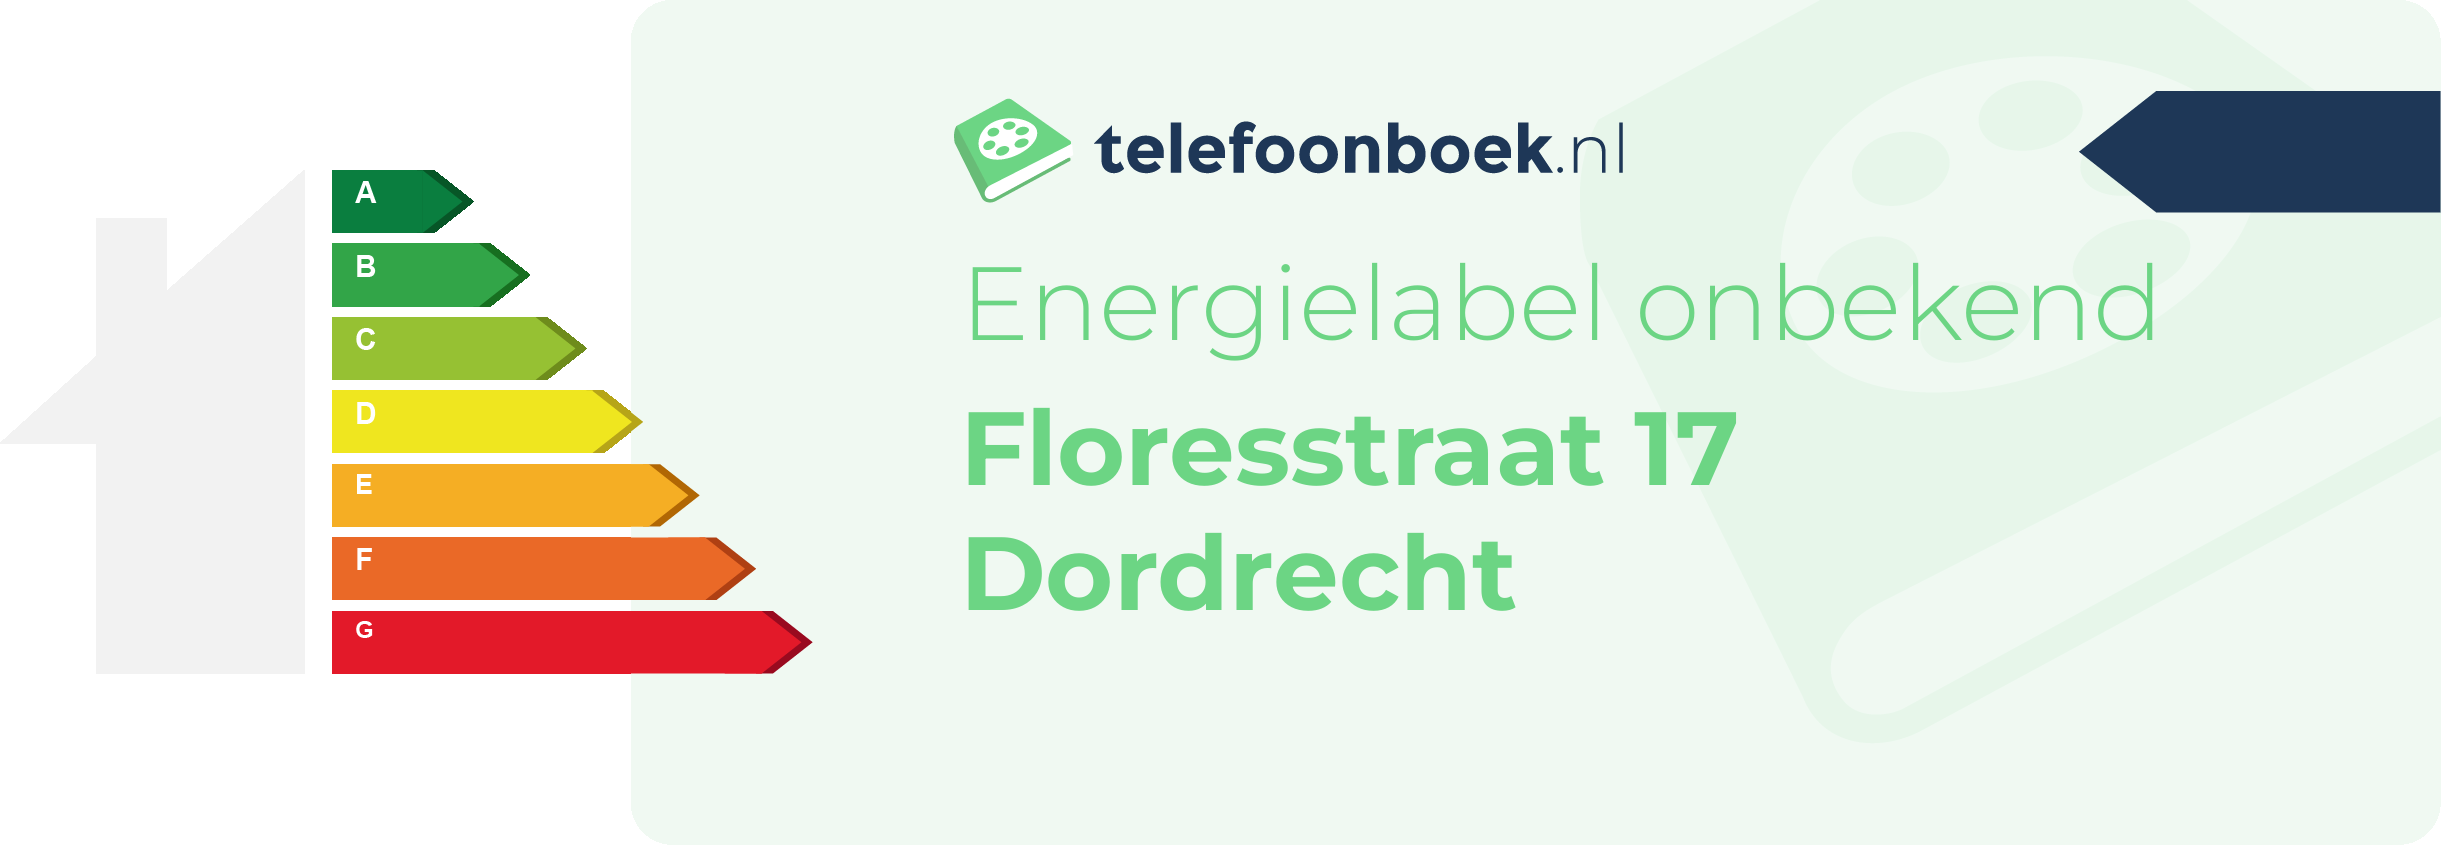 Energielabel Floresstraat 17 Dordrecht